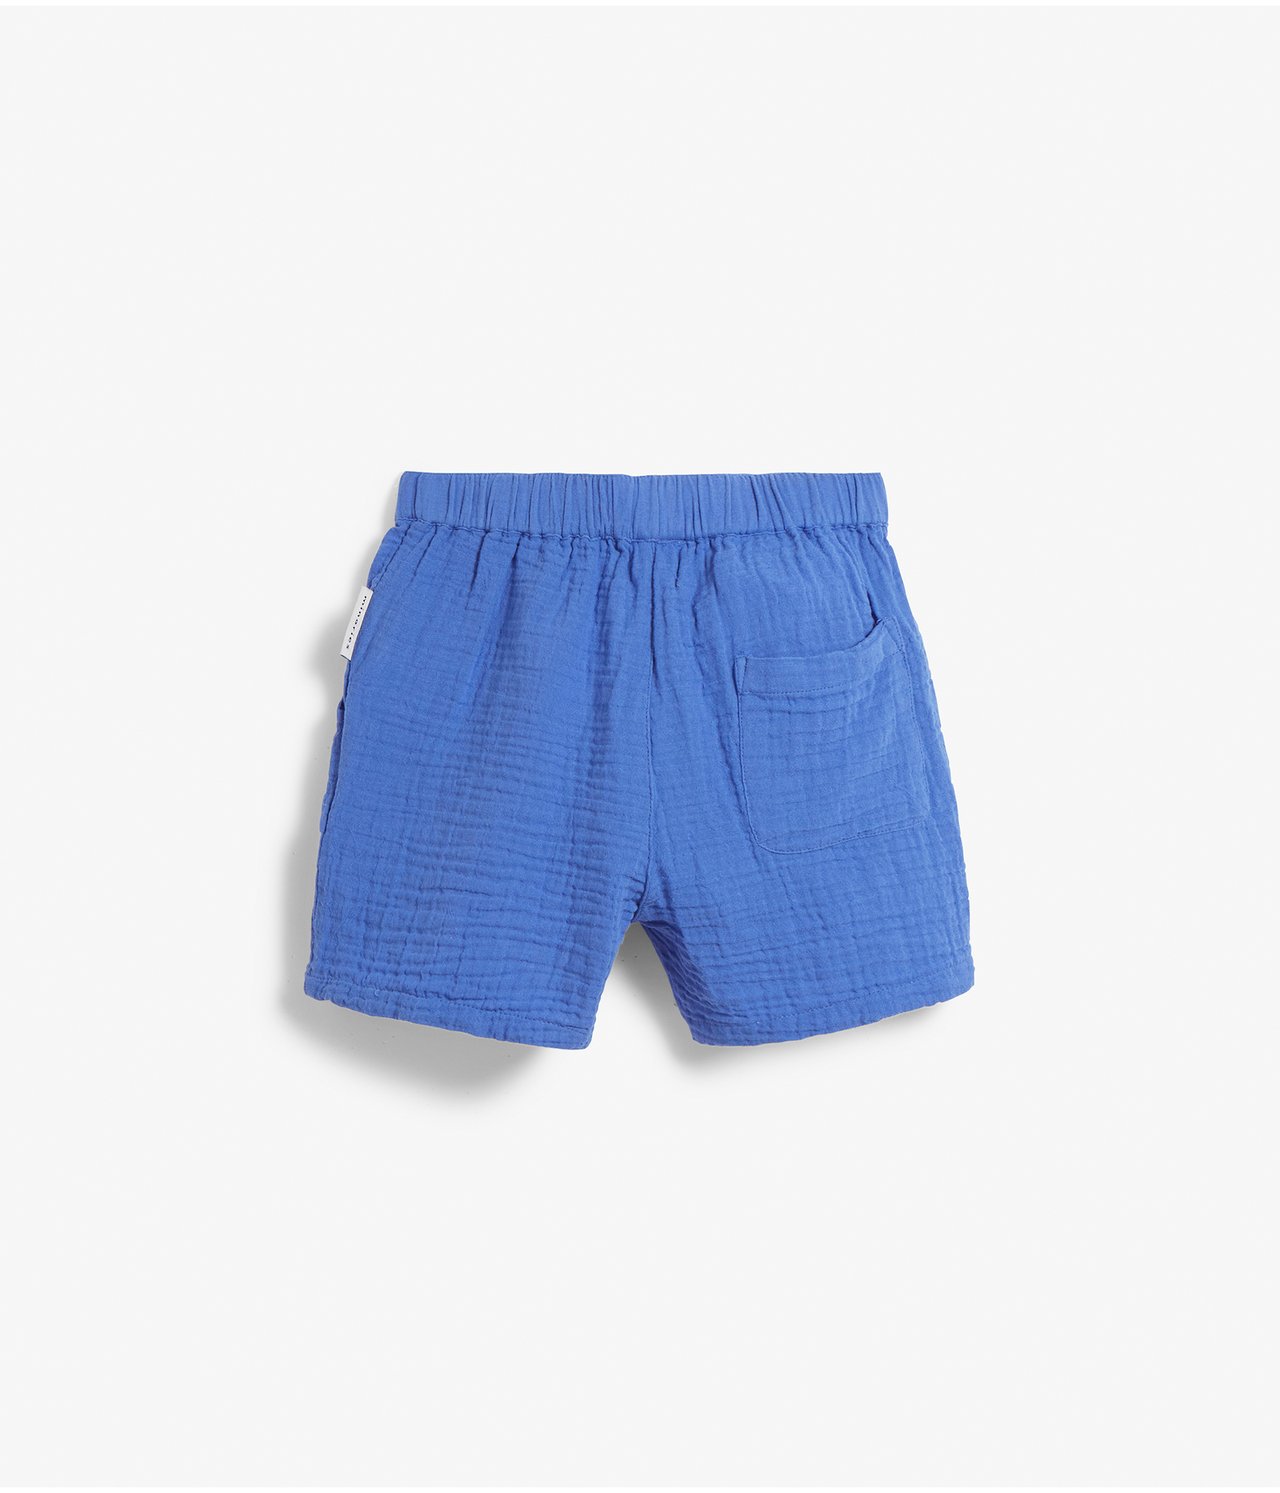 Vevd shorts - Blå - 4